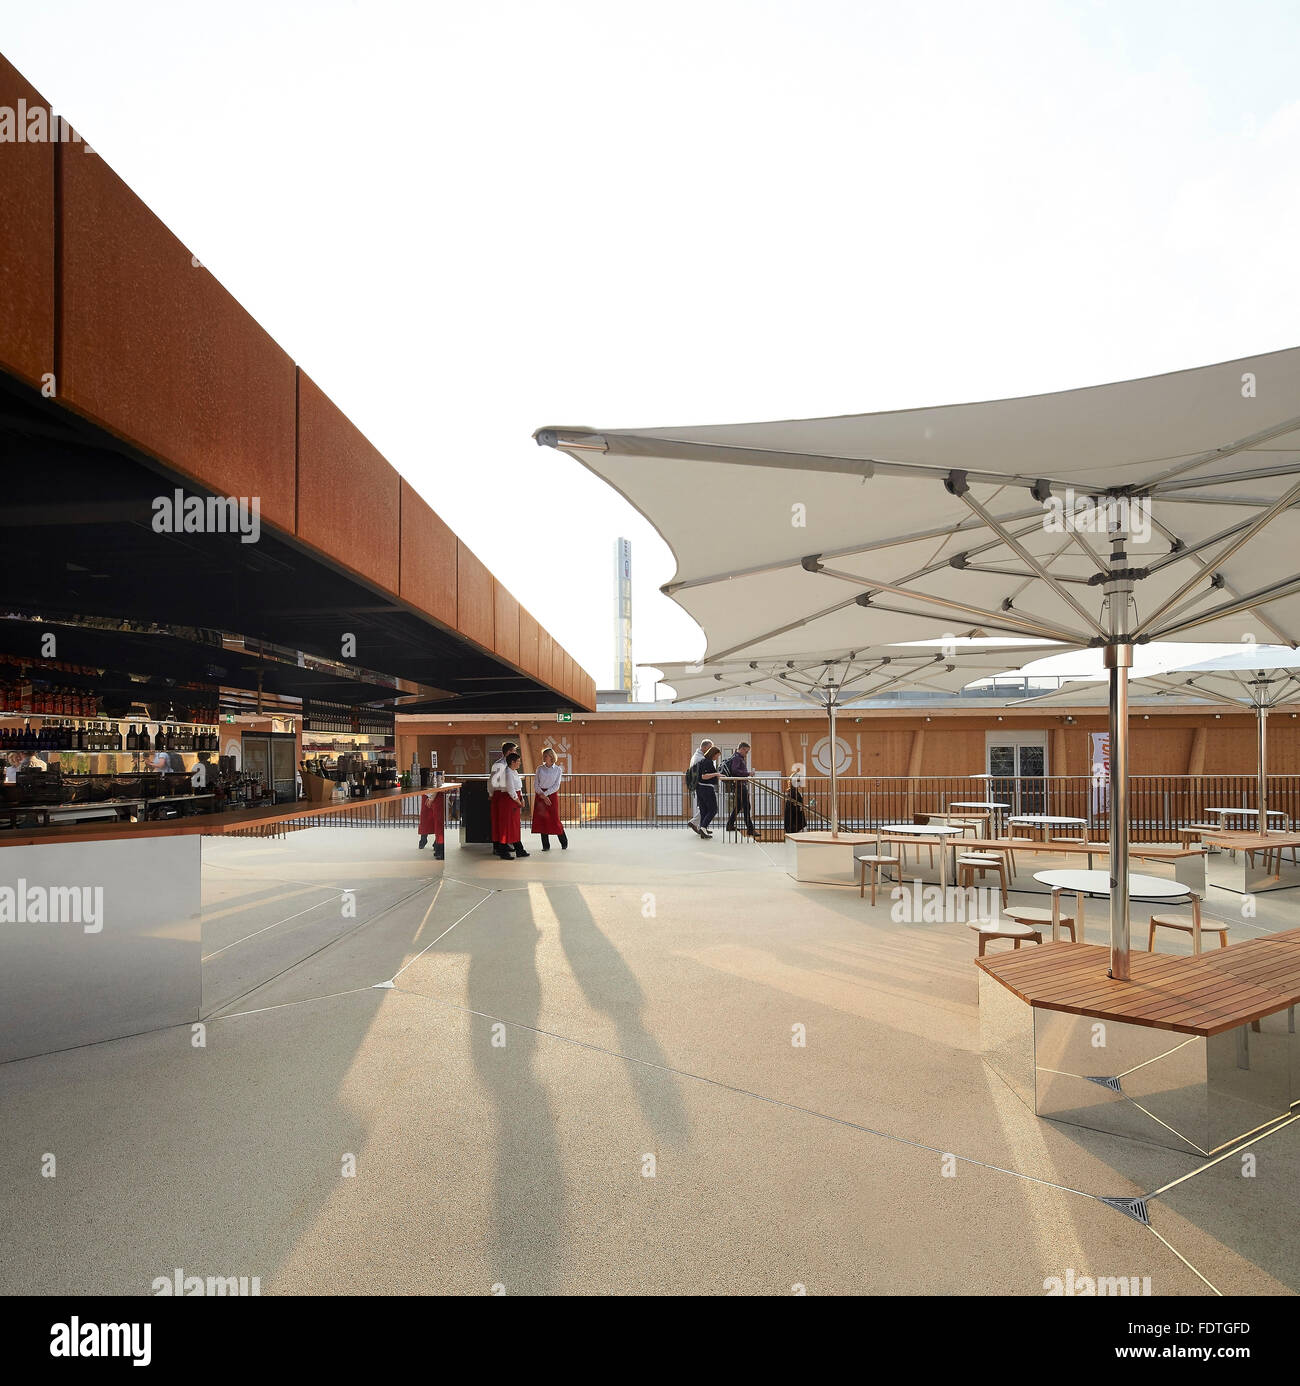 Terrasse sur le toit. L'Expo Milan 2015, UK Pavilion, Milan, Italie. Architecte : Wolfgang Buttress, 2015. Banque D'Images